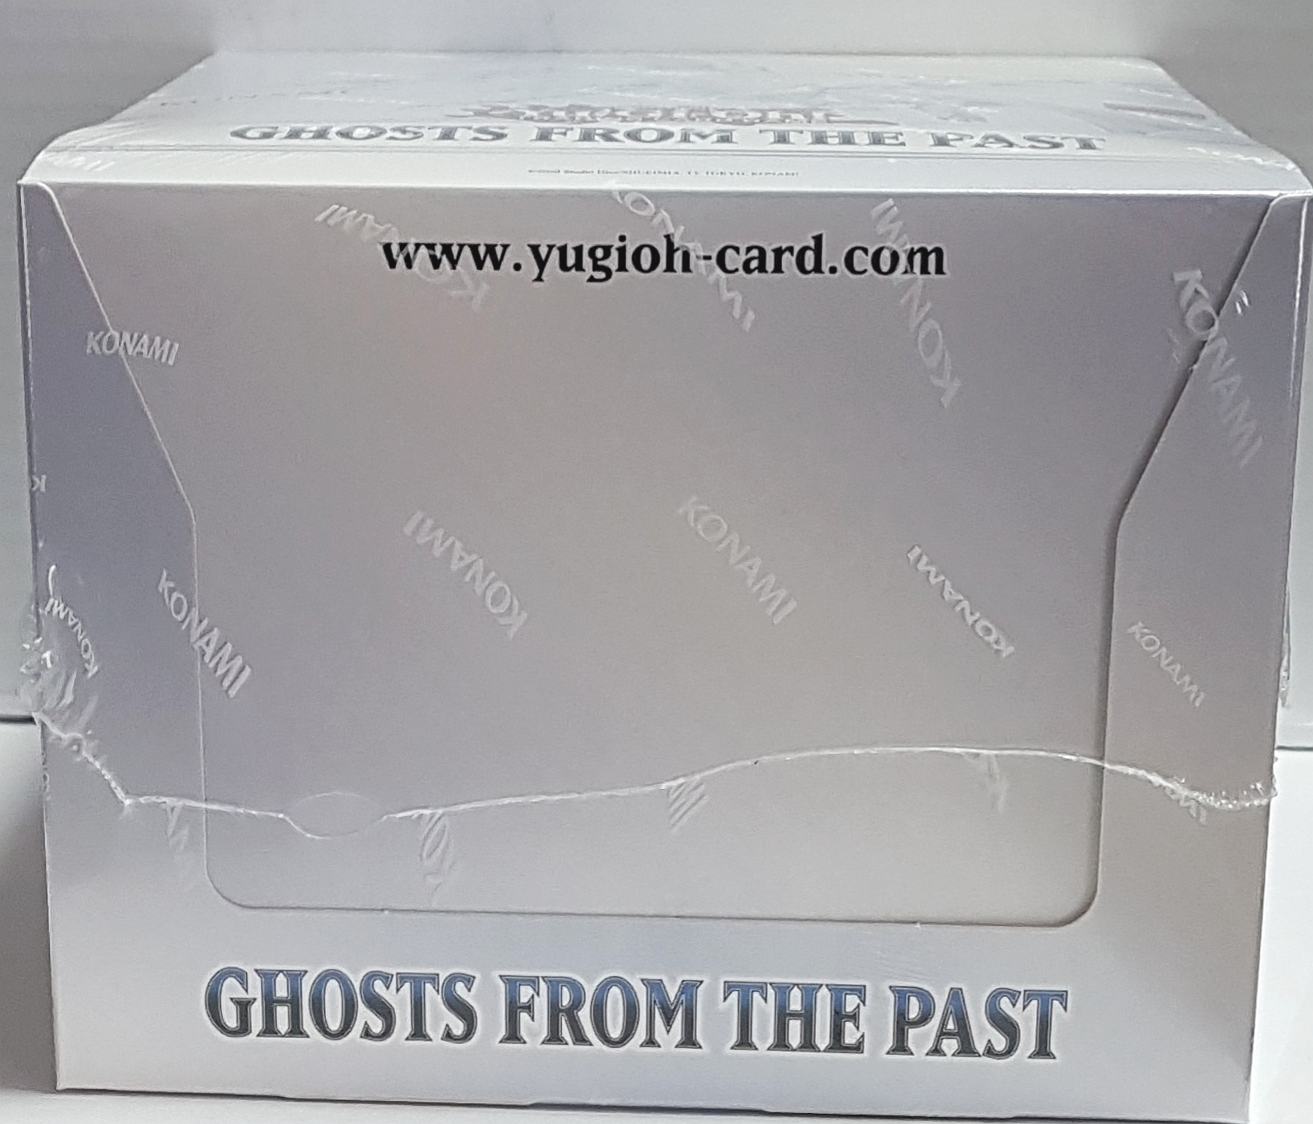 Yugioh Ghosts From The Past Display mit 5 Boxen 1 Auflage Deutsch OVP